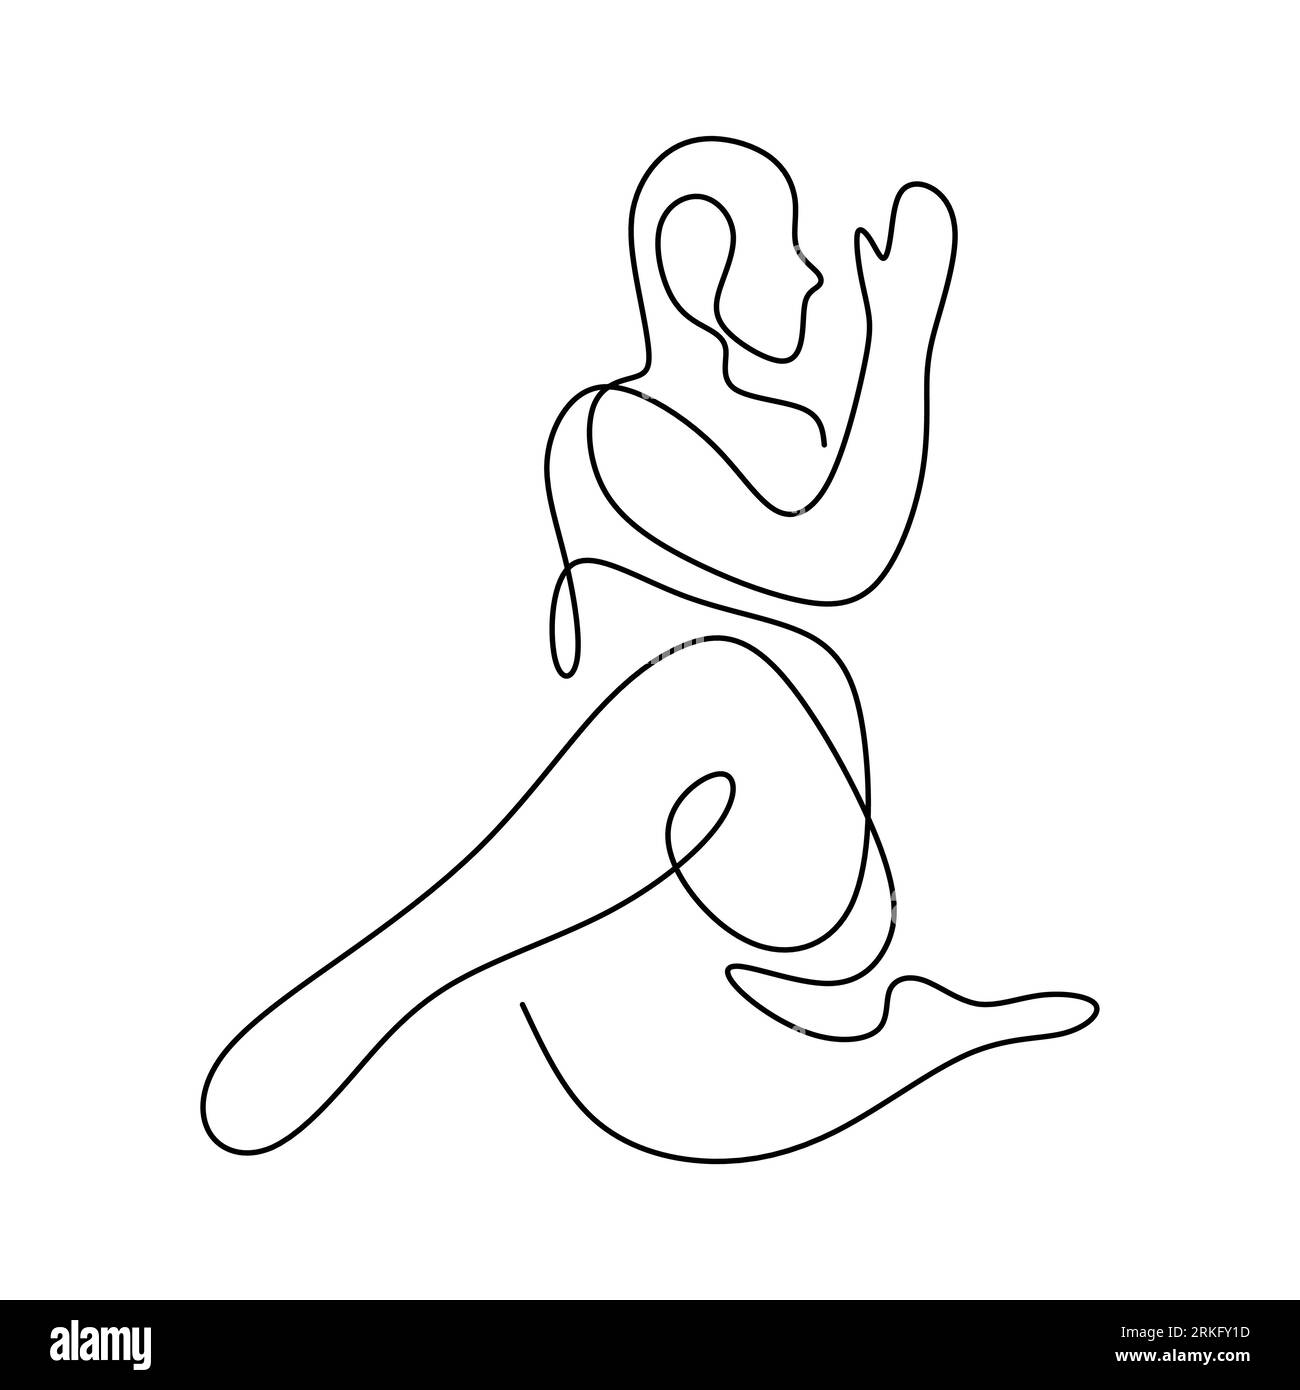 Dibujo de línea continua del concepto de yoga de fitness humano. Hombre ...